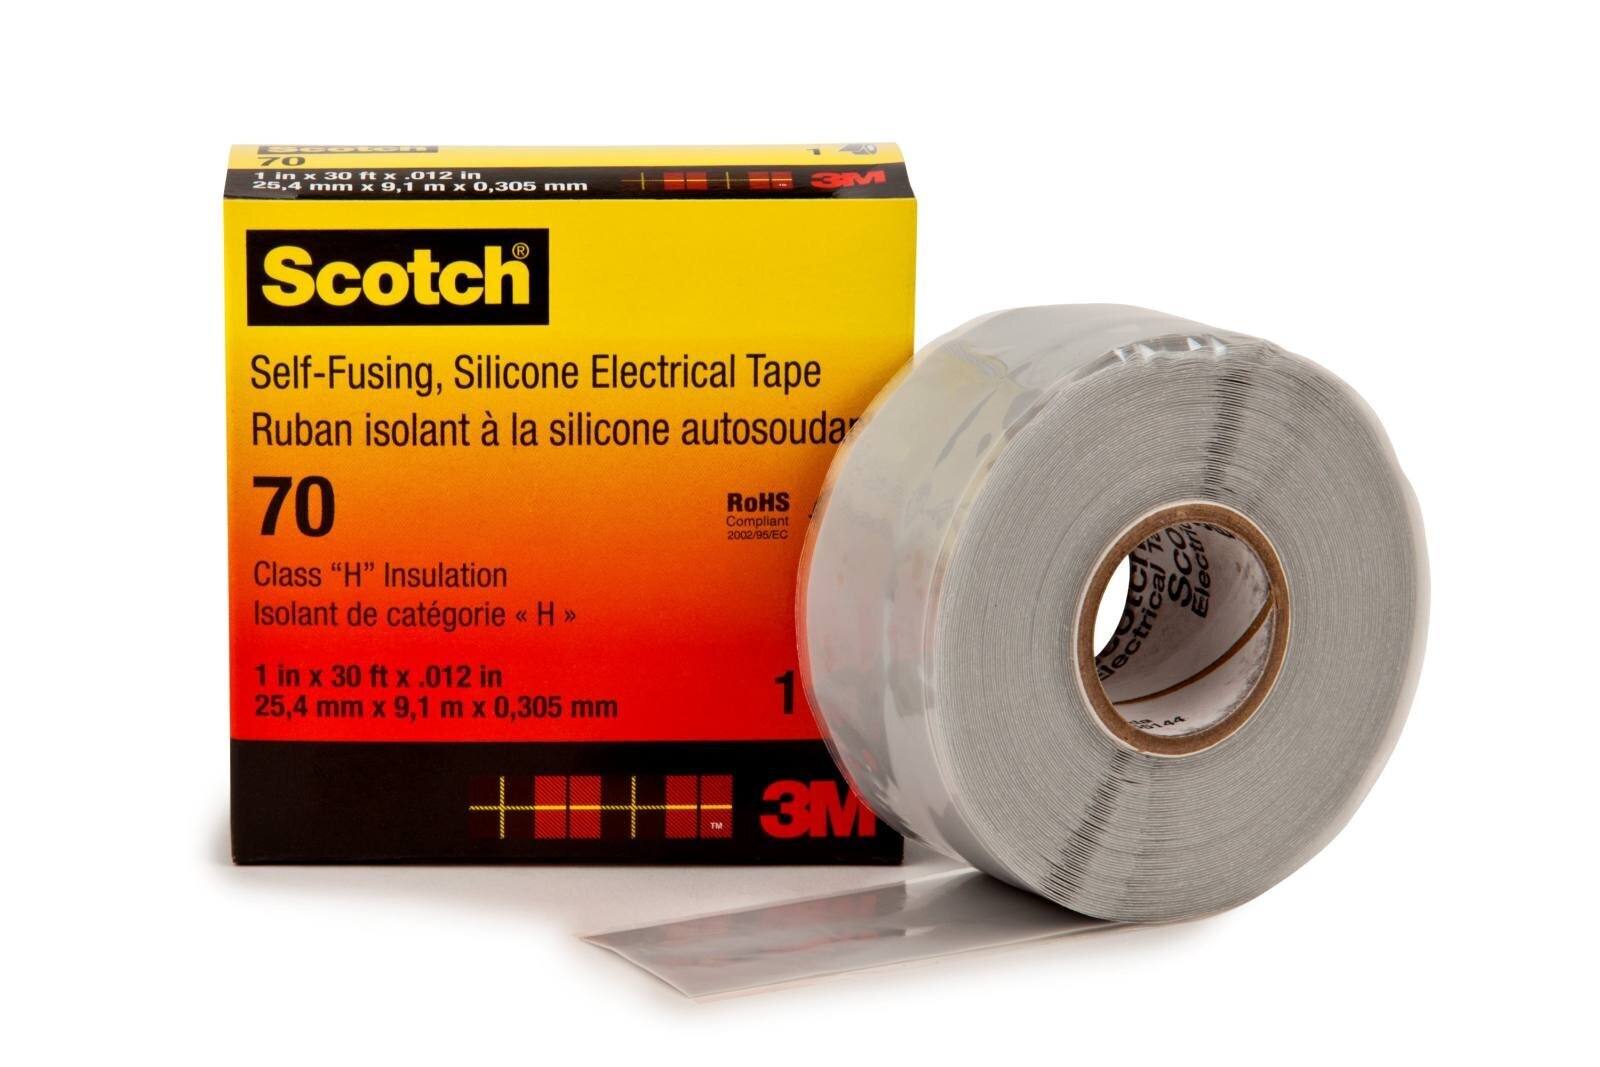 3M Scotch 70 Selbstverschweißendes Silikon-Kautschuk-Band, 25 mm x 9 m